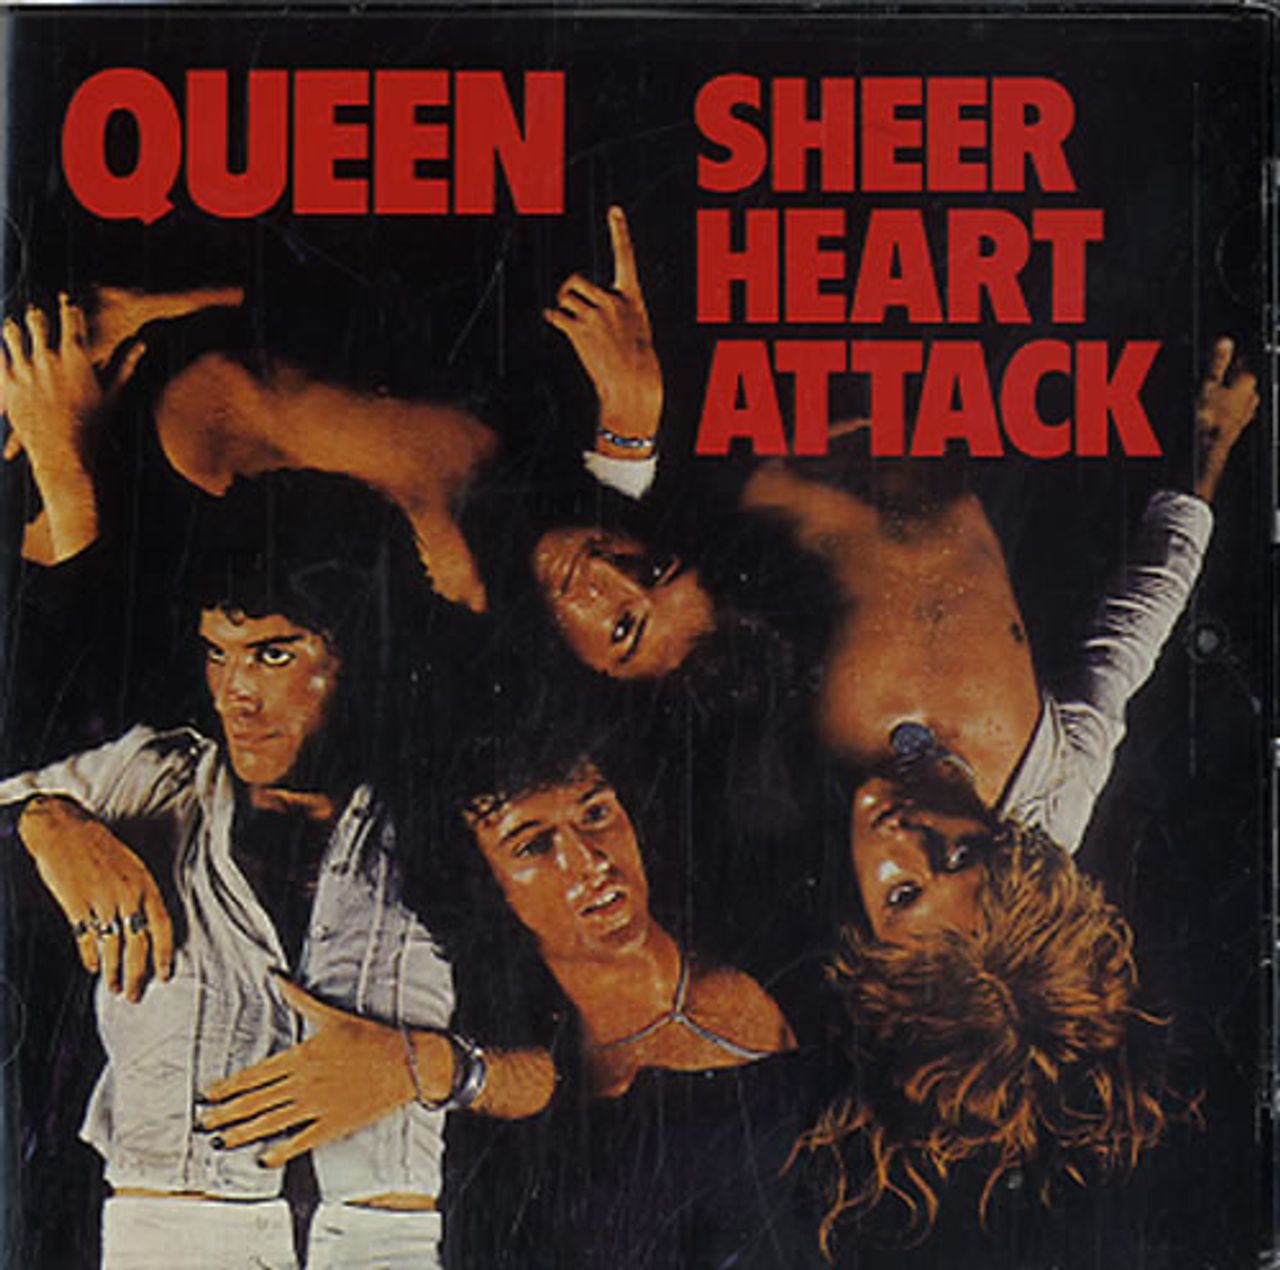 Queen Sheer Heart Attack UK 2-CD album set — RareVinyl.com